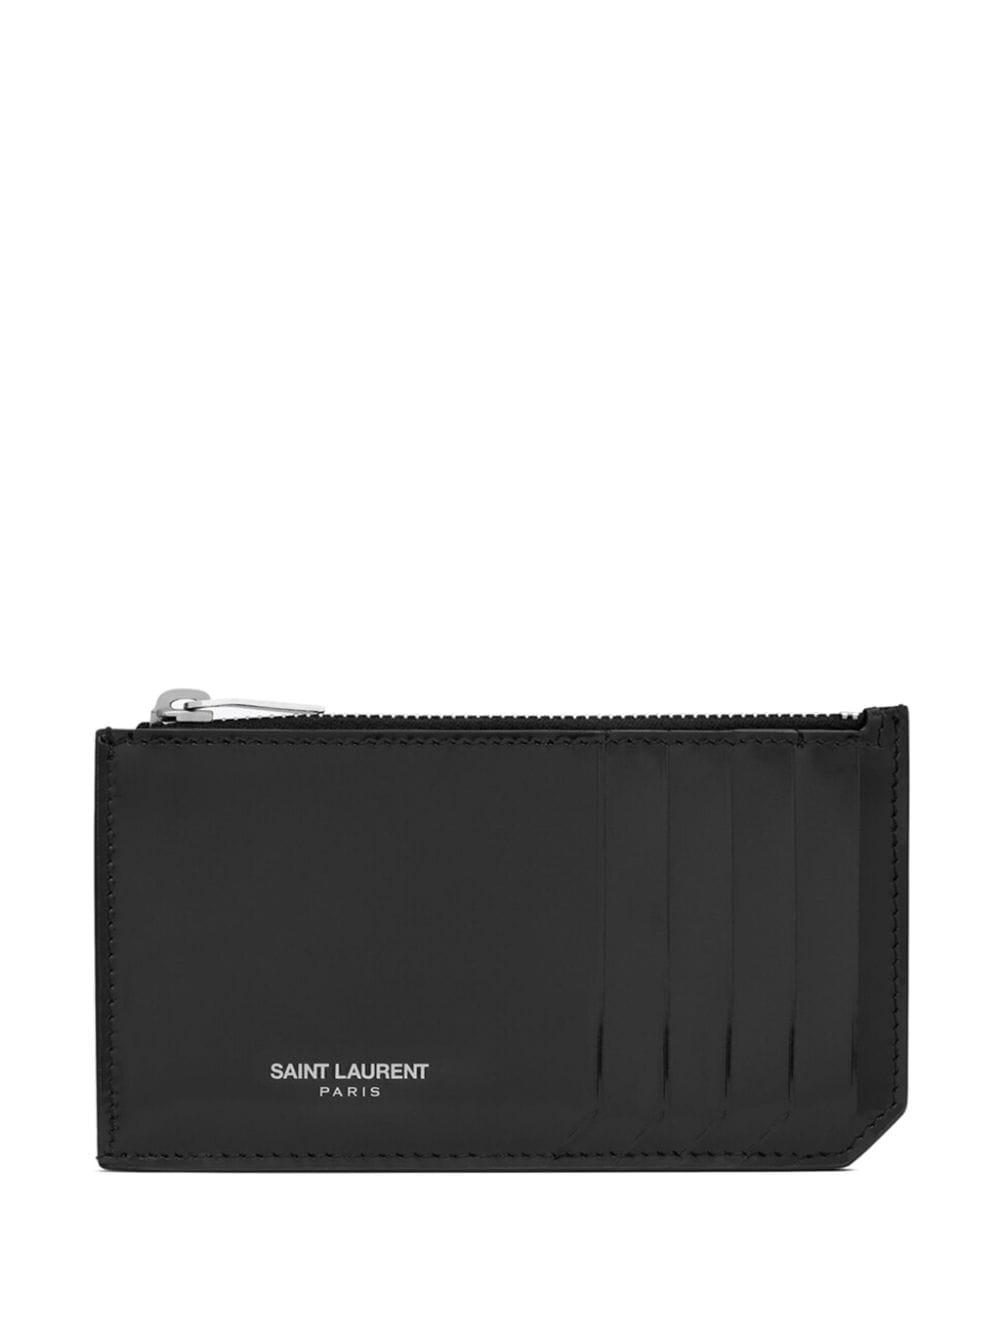 Saint Laurent Fragments Monogram Zip Cardholder - Black for Women